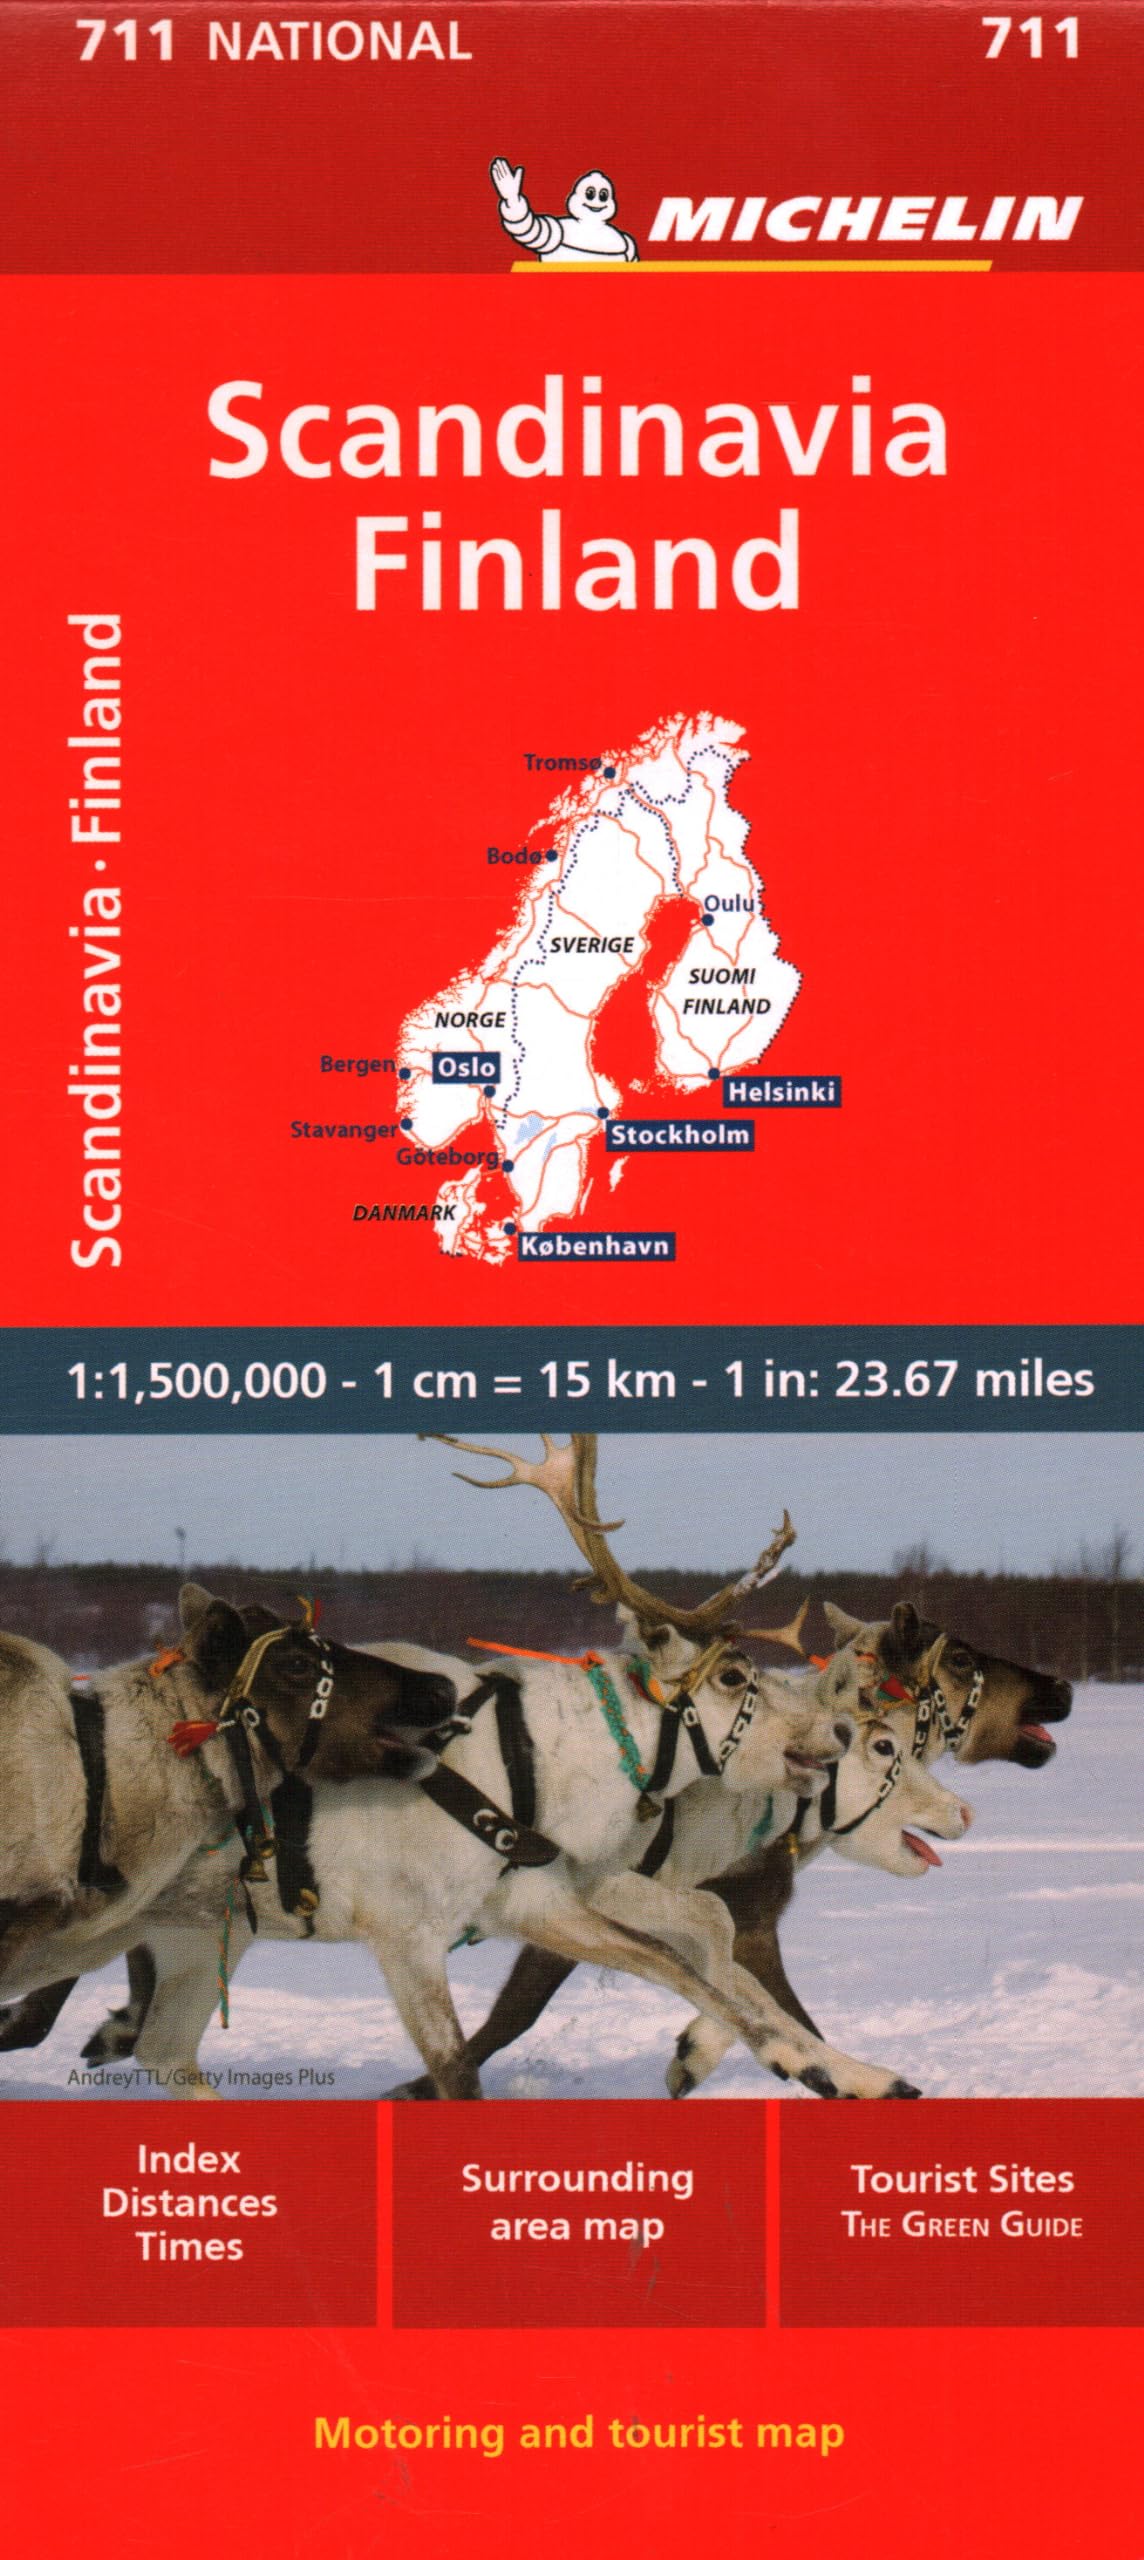 מפת סקנדינביה ופינלנד 711 מישלן 